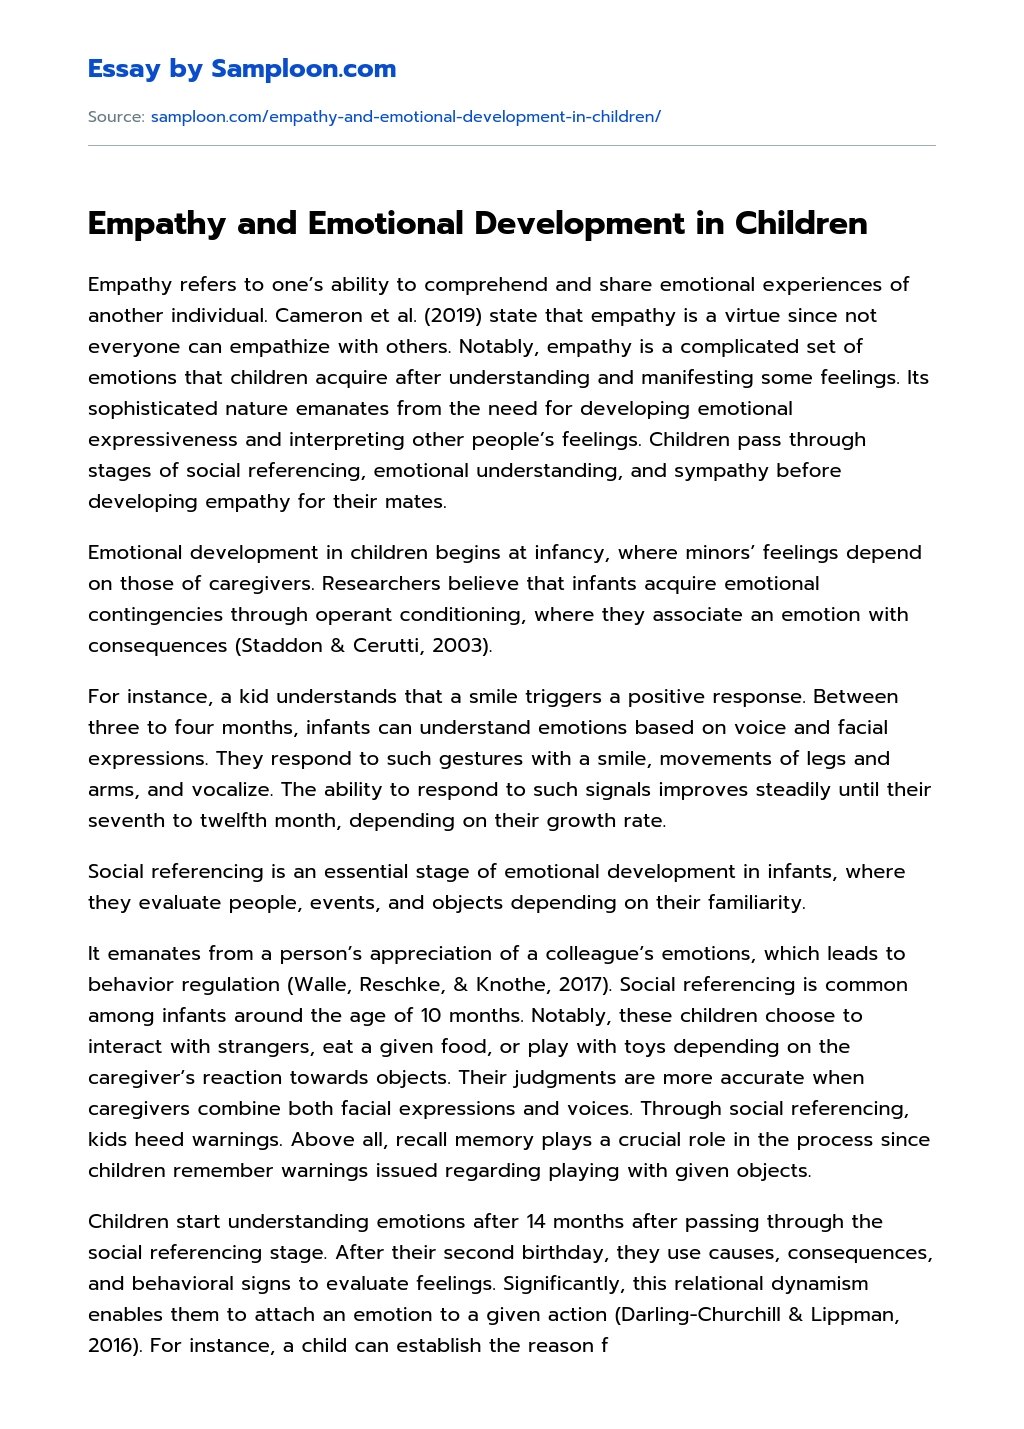 Empathy and Emotional Development in Children essay